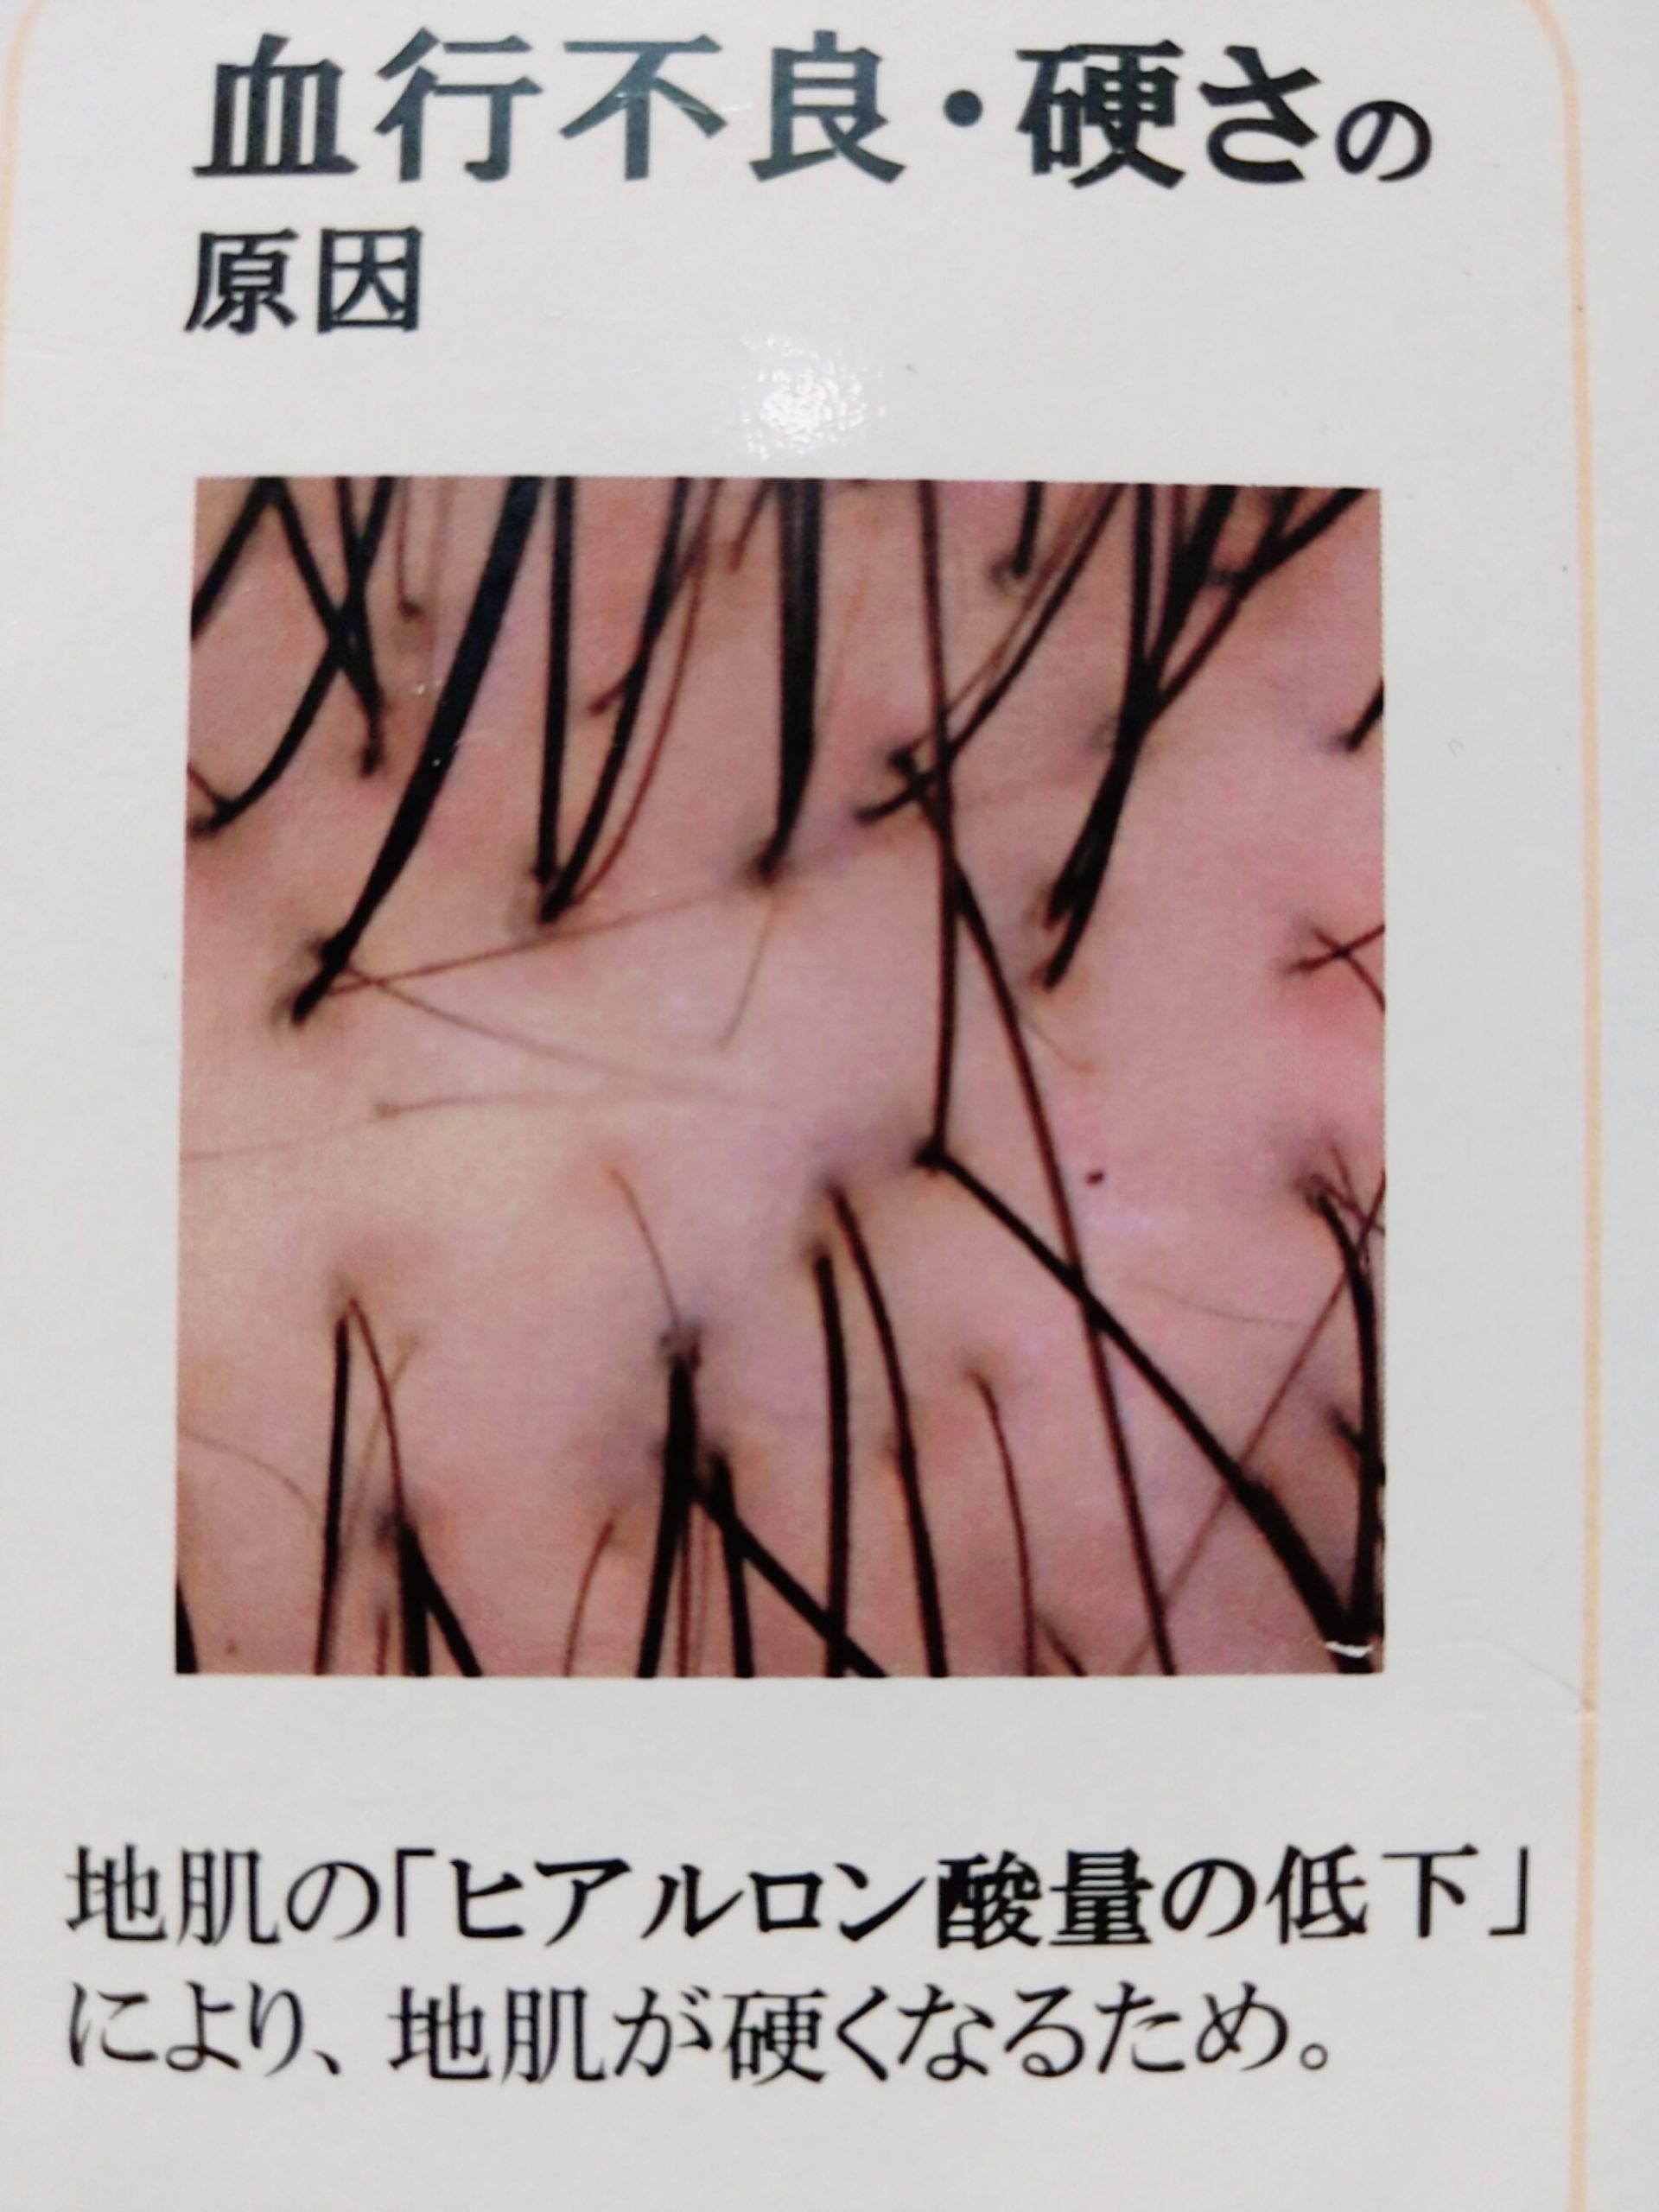 エイジング毛とは 30代 40代から出てくるエイジング毛の改善方法part2 奈良 京都 大阪の美容室 ハピネス